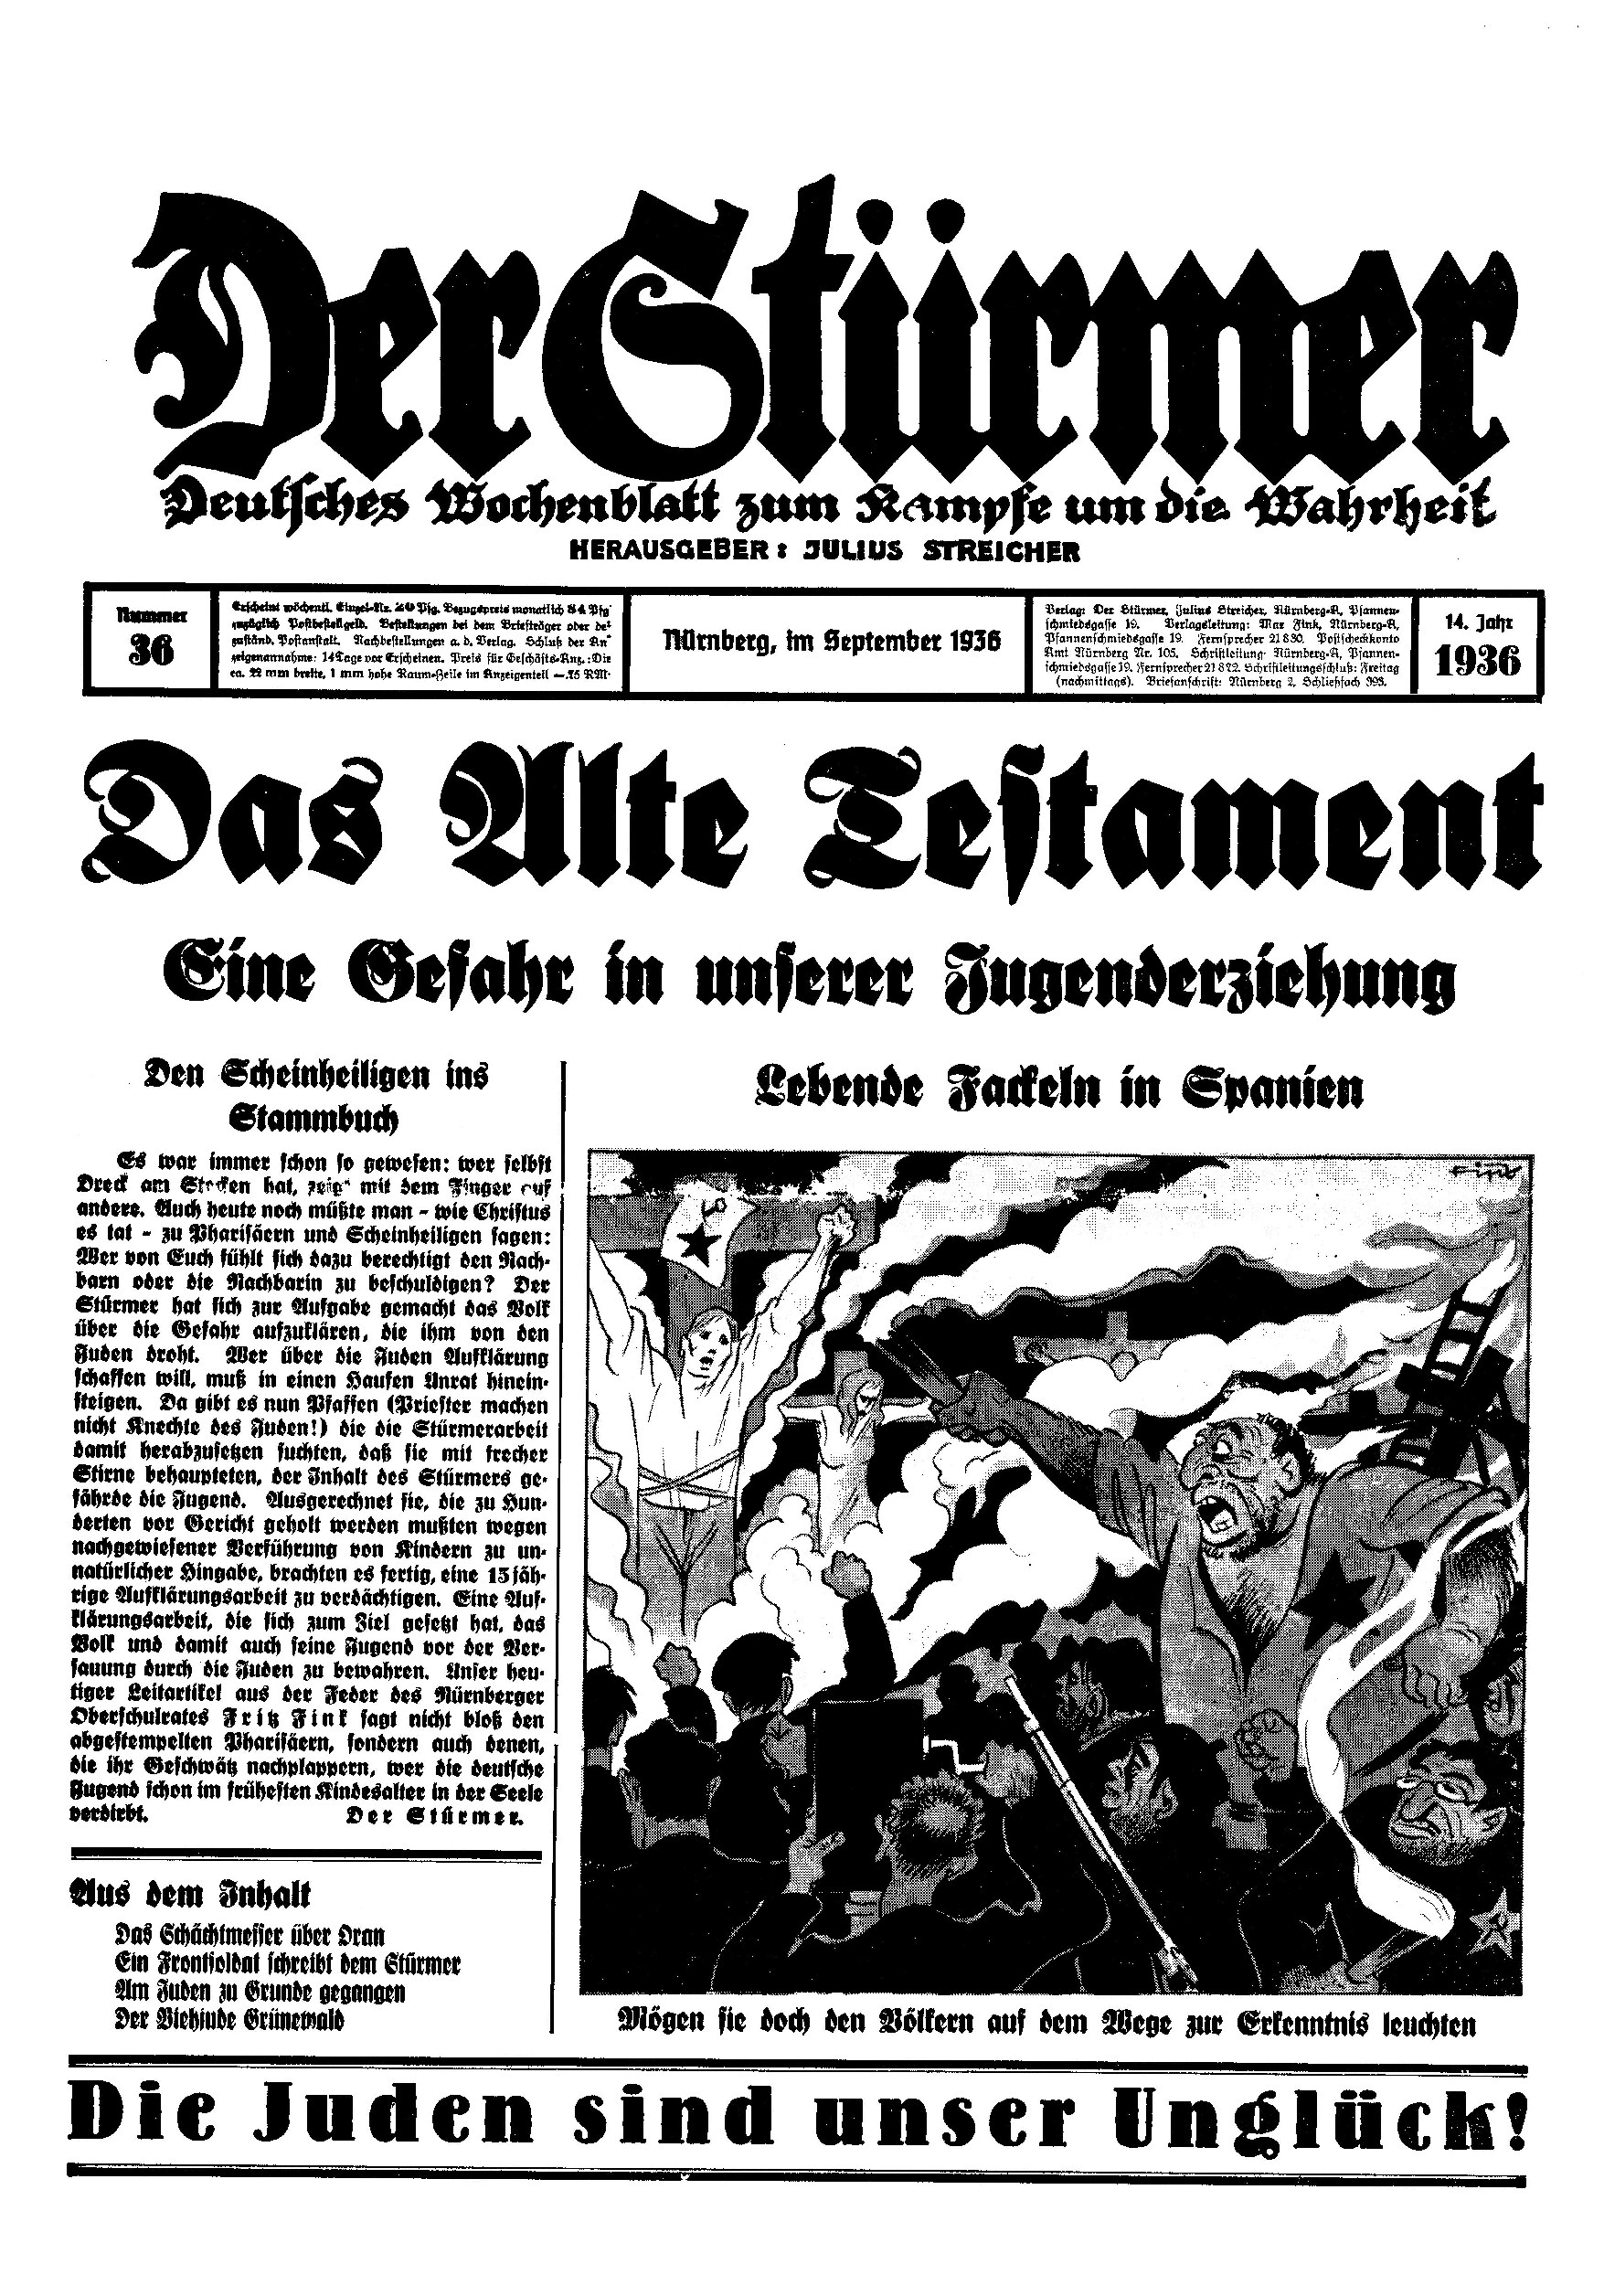 Der Stürmer - 1936 Nr. 36 - Das Alte Testament